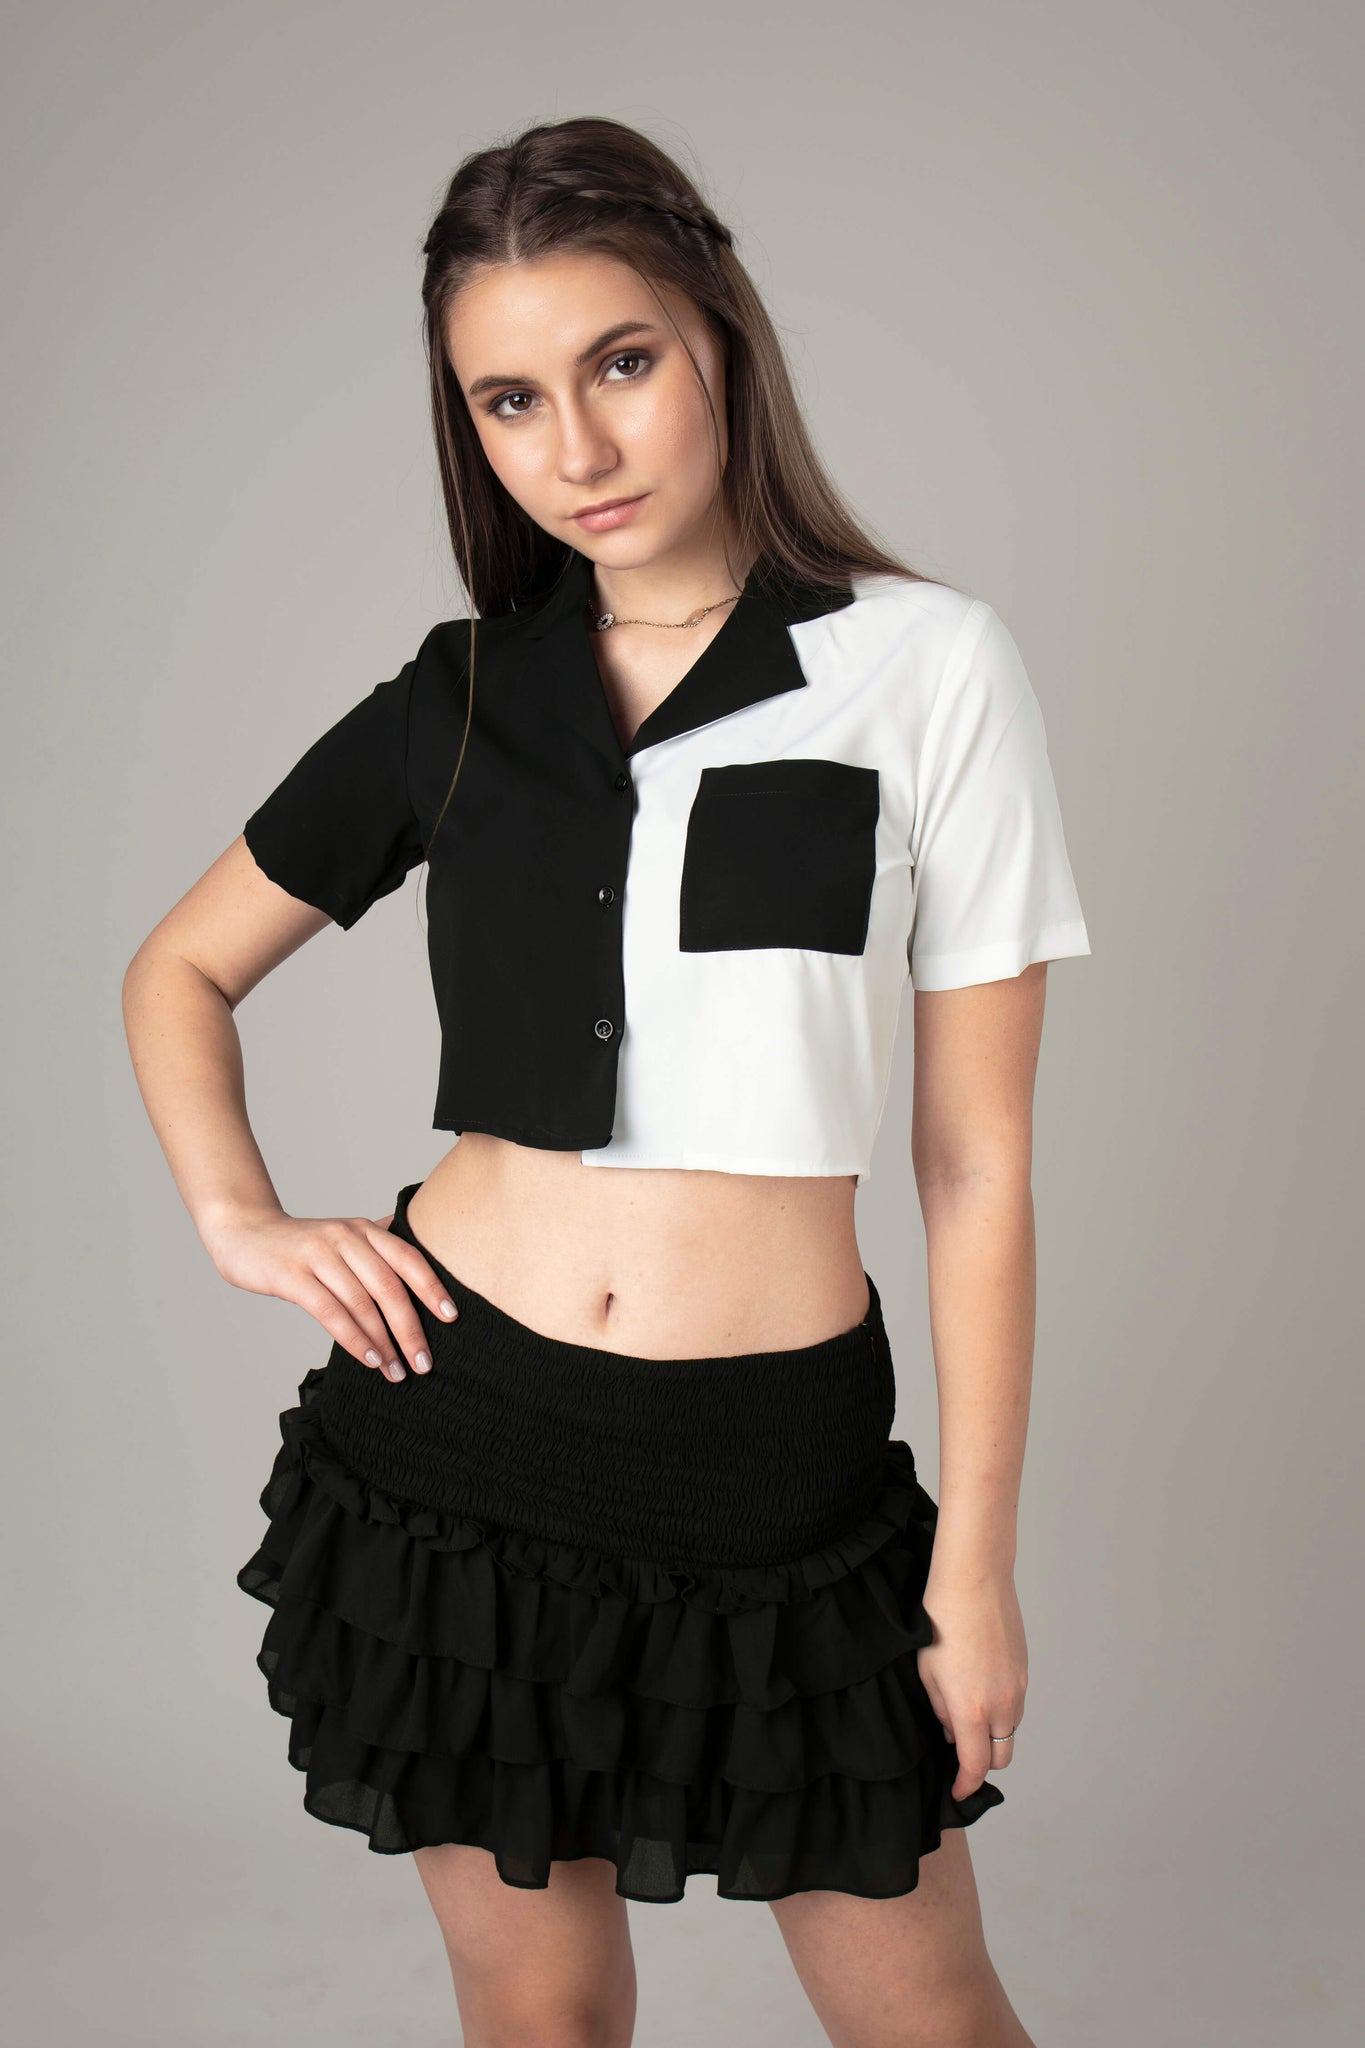 Colorblock Skirt Co-Ord Set For Women